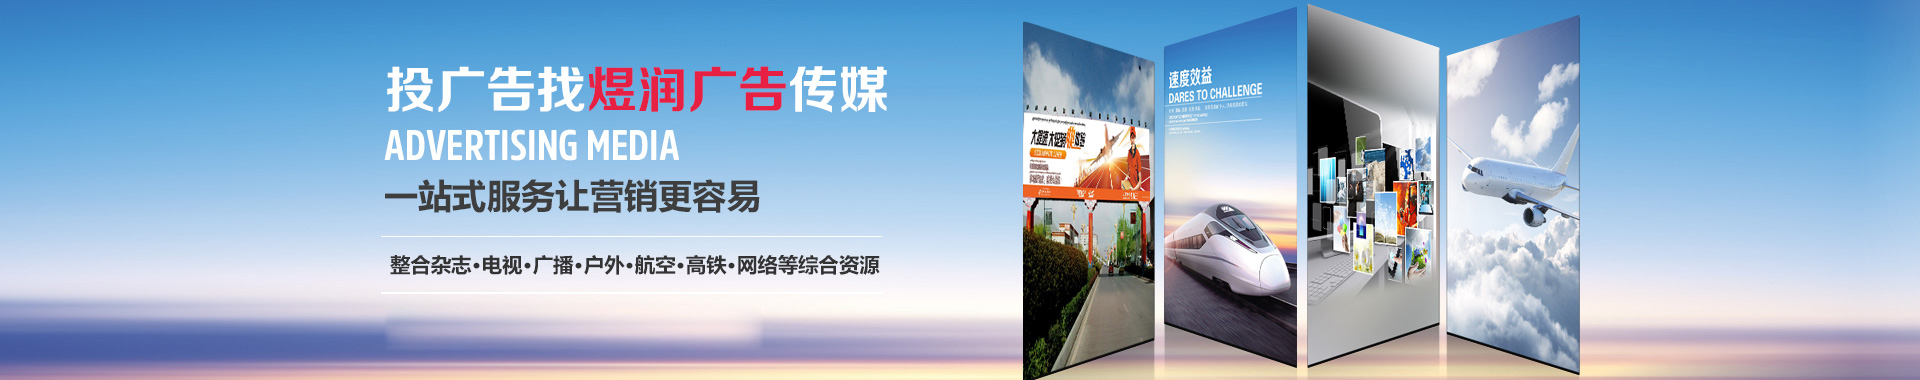 中国物业管理 杂志广告电话